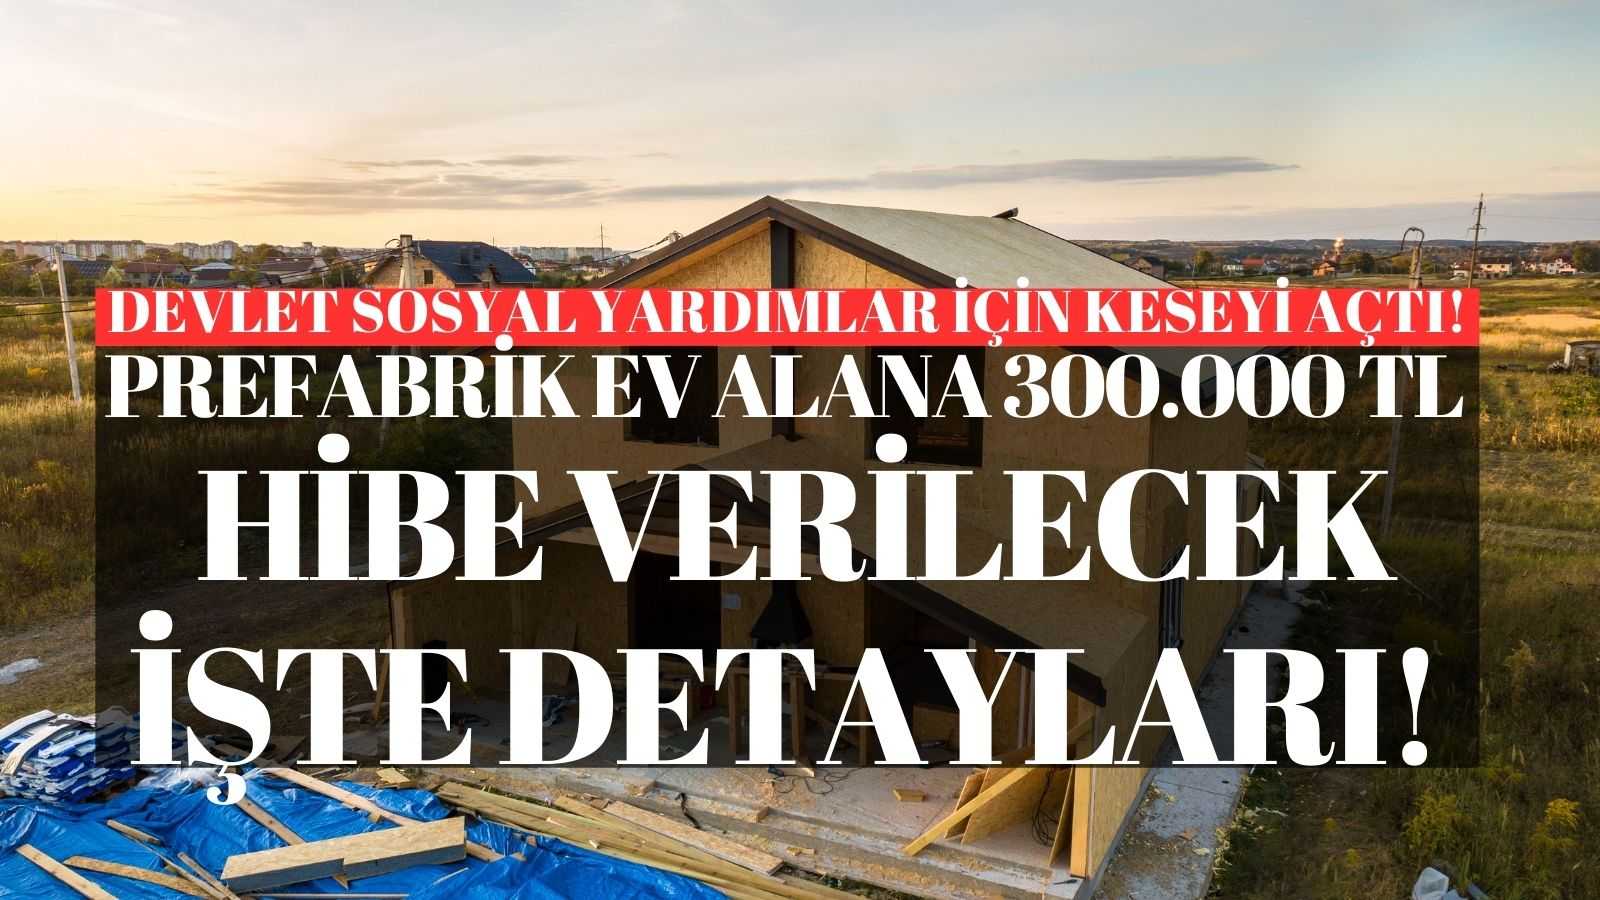 Devlet Sosyal Yardımlar İçin Keseyi Açtı: Prefabrik Ev Alana 300.000 TL Hibe Verilecek! İşte Detayları!